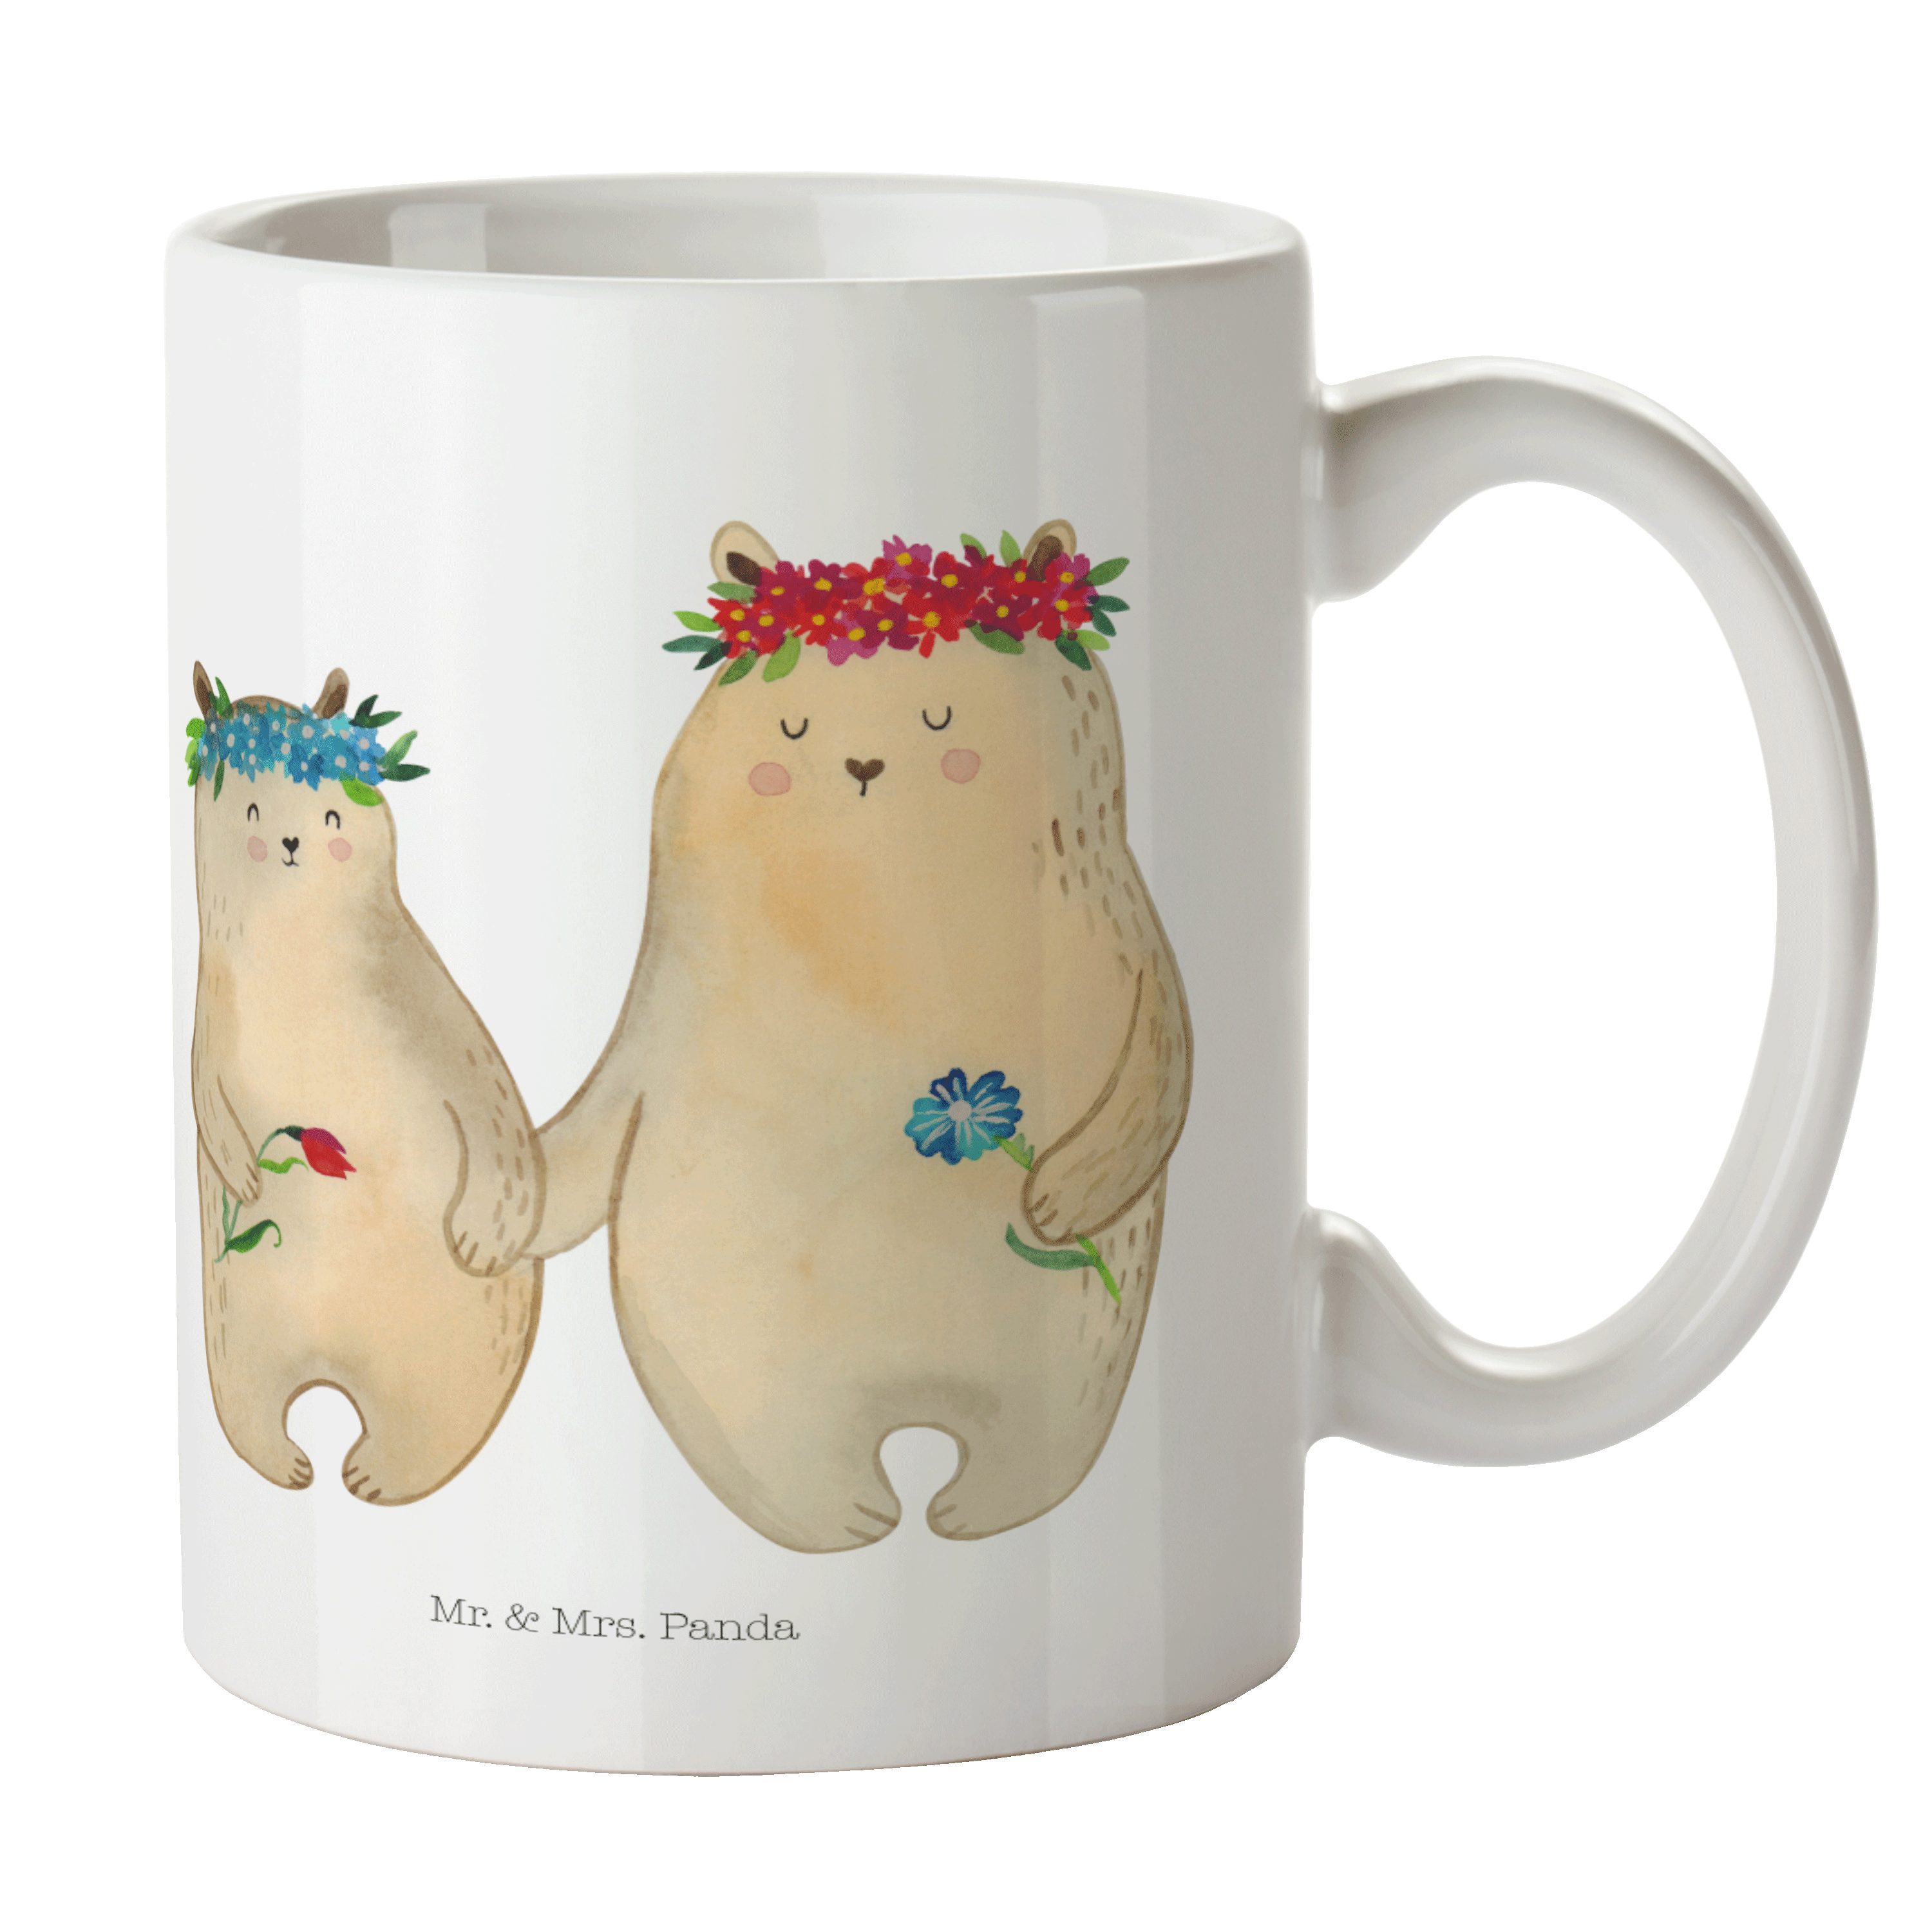 Mr. & Mrs. Panda Tasse Bären mit Blumenkranz - Weiß - Geschenk, Tasse Motive, Mutti, Tasse, Keramik